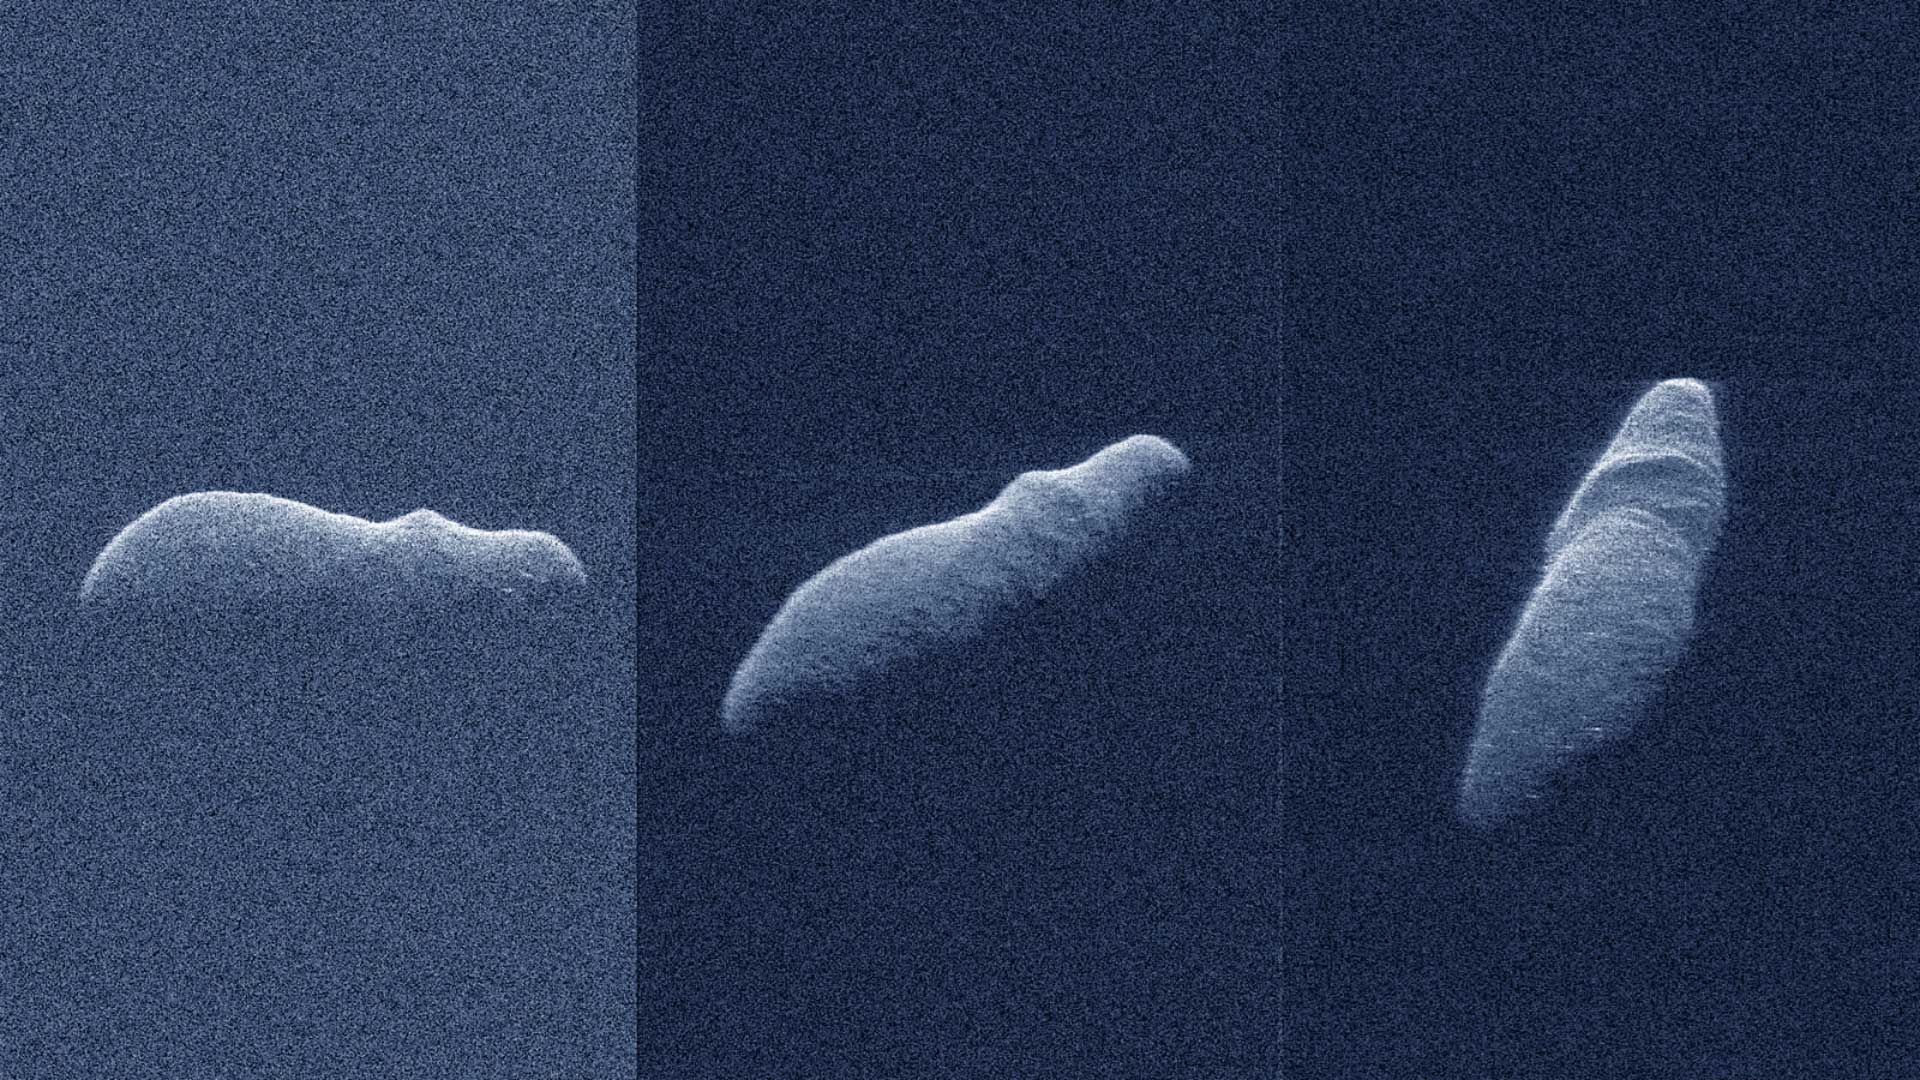 Астероид 2003 SD220 - радарное изображение